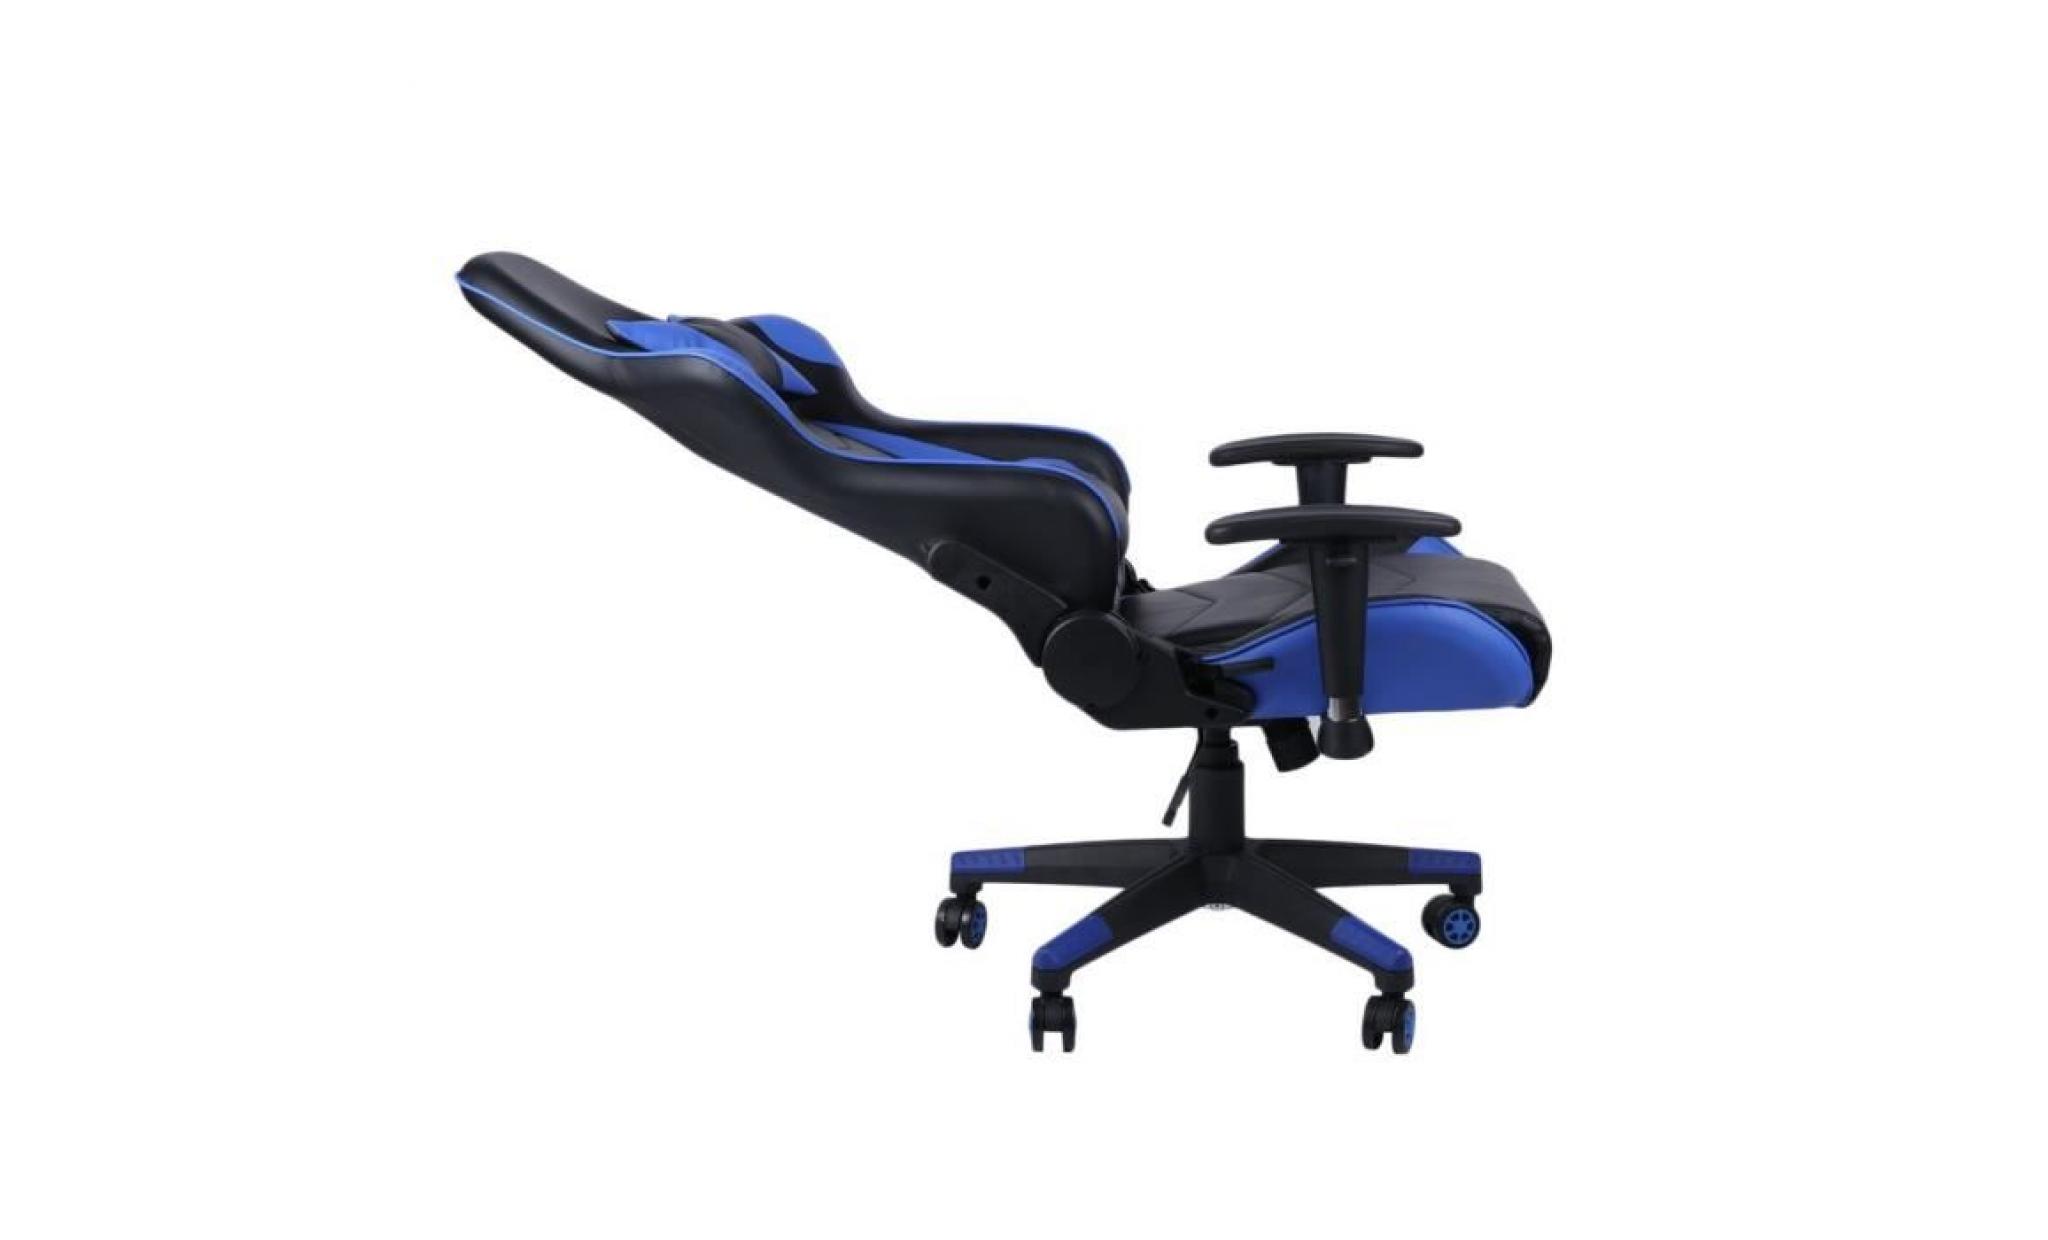 chaise fauteuil siège bureau racing gaming chaise réglable en cuir+ poupée oreiller pas cher